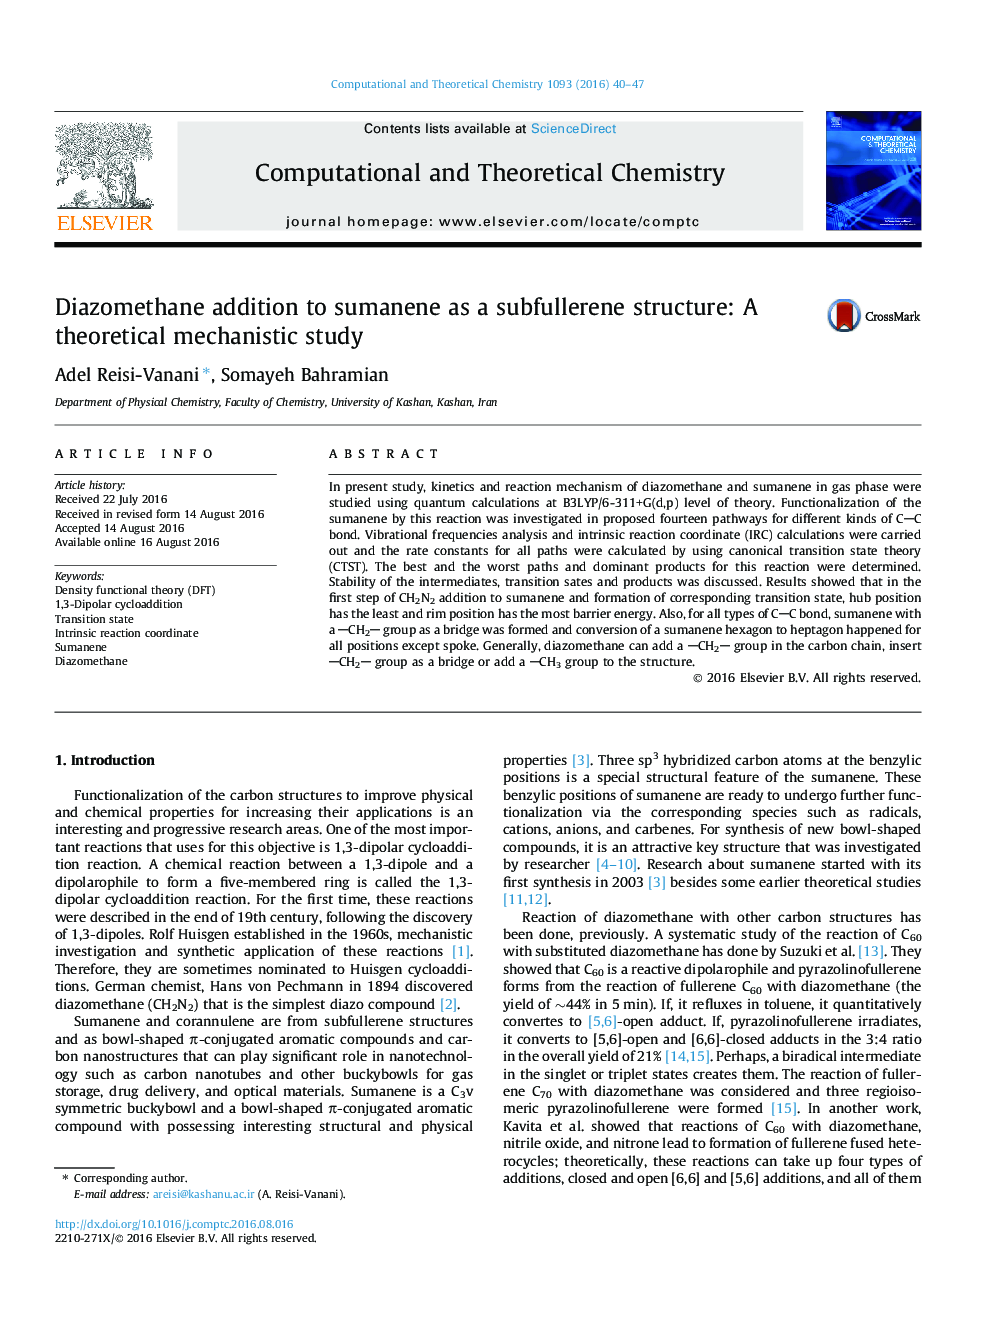 علاوه بر افزودن دیازوماتان به سومانن به عنوان ساختار زیربولرلن: یک مطالعه مکانیستی نظری 